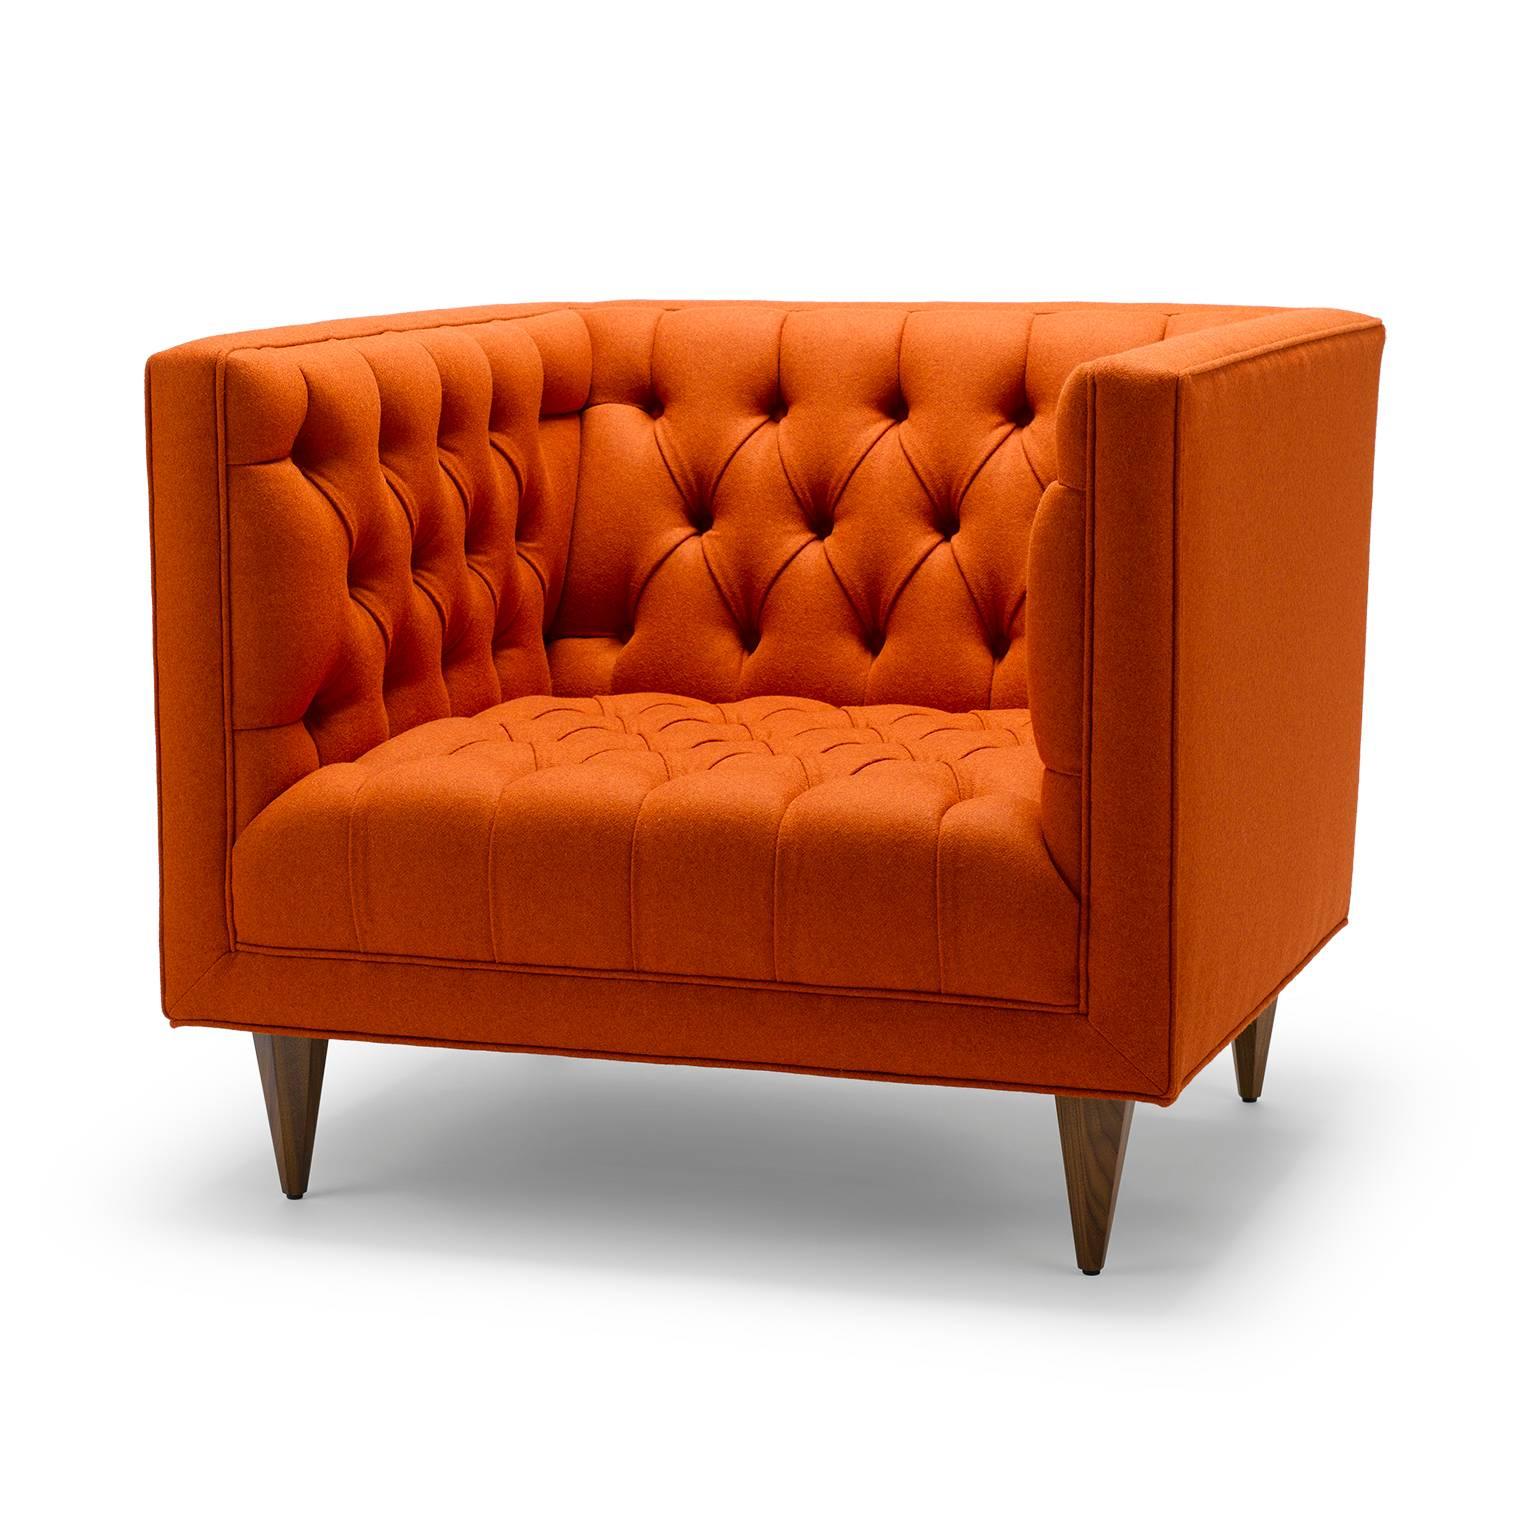 Der Tux Chair ist unsere moderne Interpretation des klassischen Chesterfield. Die tiefe Knopfleiste und die maßgeschneiderten Details machen dieses Stück zu einem persönlichen Favoriten. Hier abgebildet in Moon Melton Earth Fire gepolstert, mit